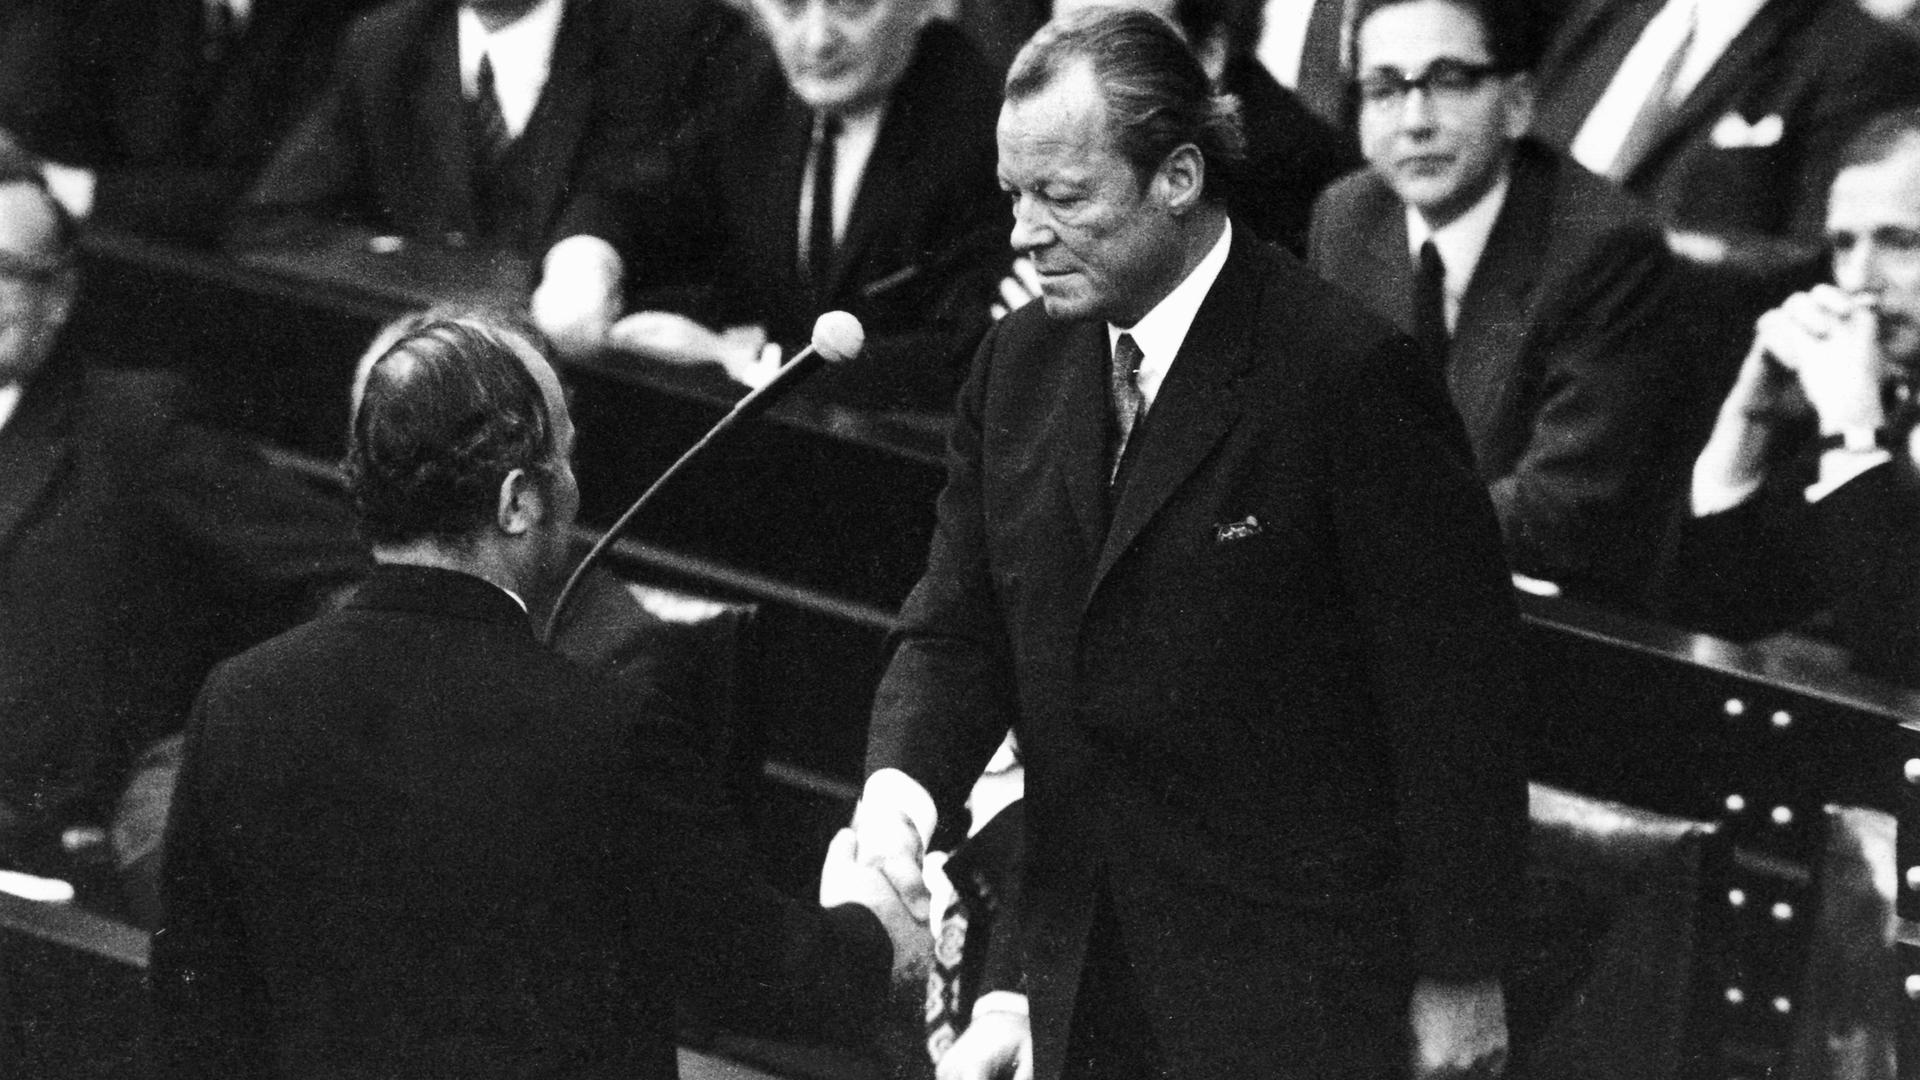 Der unterlegene CDU-Oppositionsführer Rainer Barzel (links im Bild) gratuliert am 27. April 1972 SPD-Bundeskanzler Willy Brandt nachdem das von der Opposition angestrengte Konstruktive Misstrauensvotum gegen Brandt im Bundestag gescheitert ist.